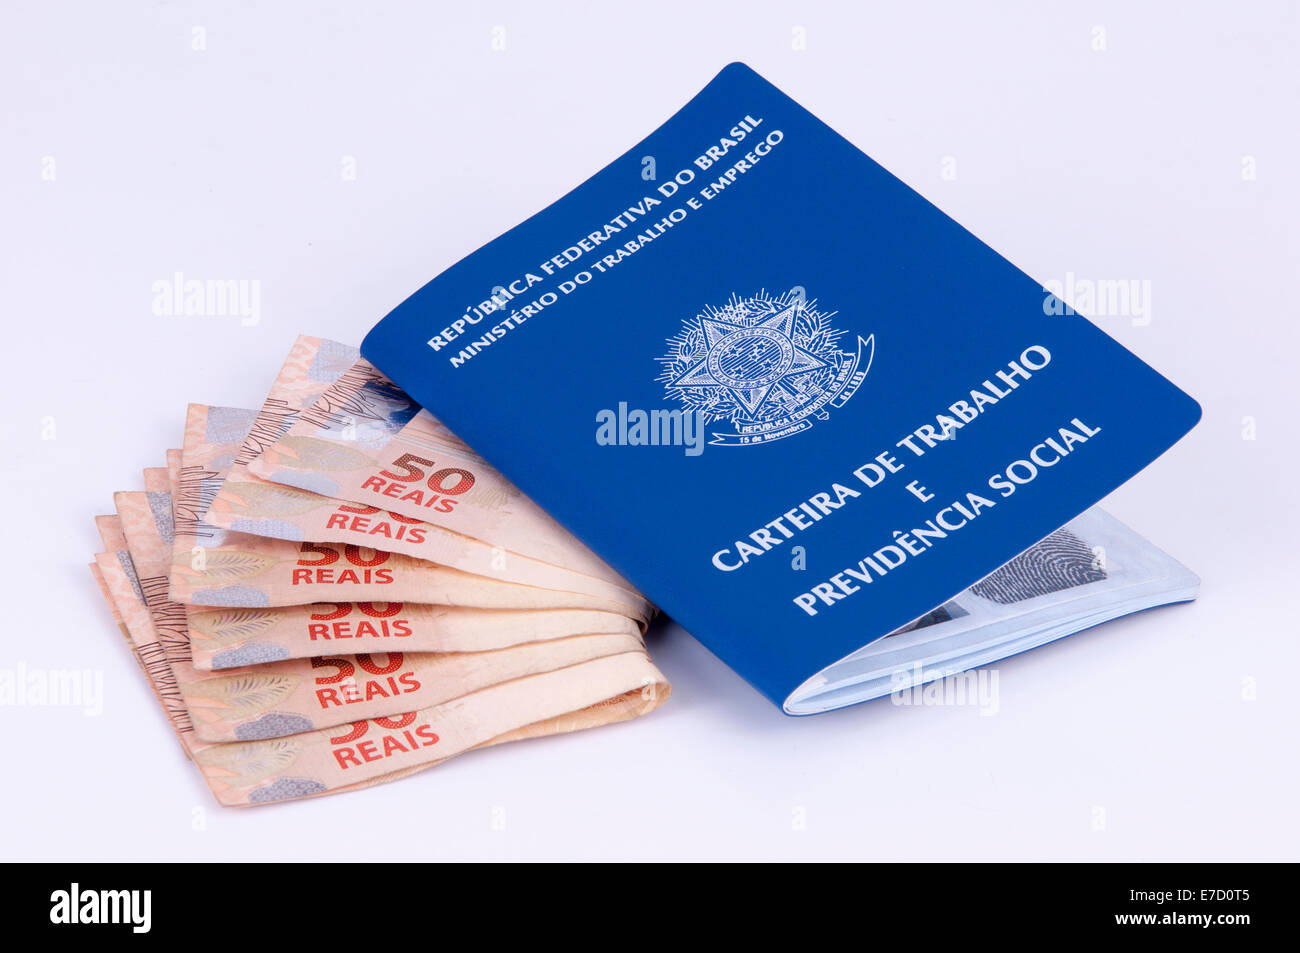 Brasiliano di documento di lavoro e sicurezza sociale documento (Carteira de Trabalho) e valuta brasiliana (reale) su sfondo bianco Foto Stock